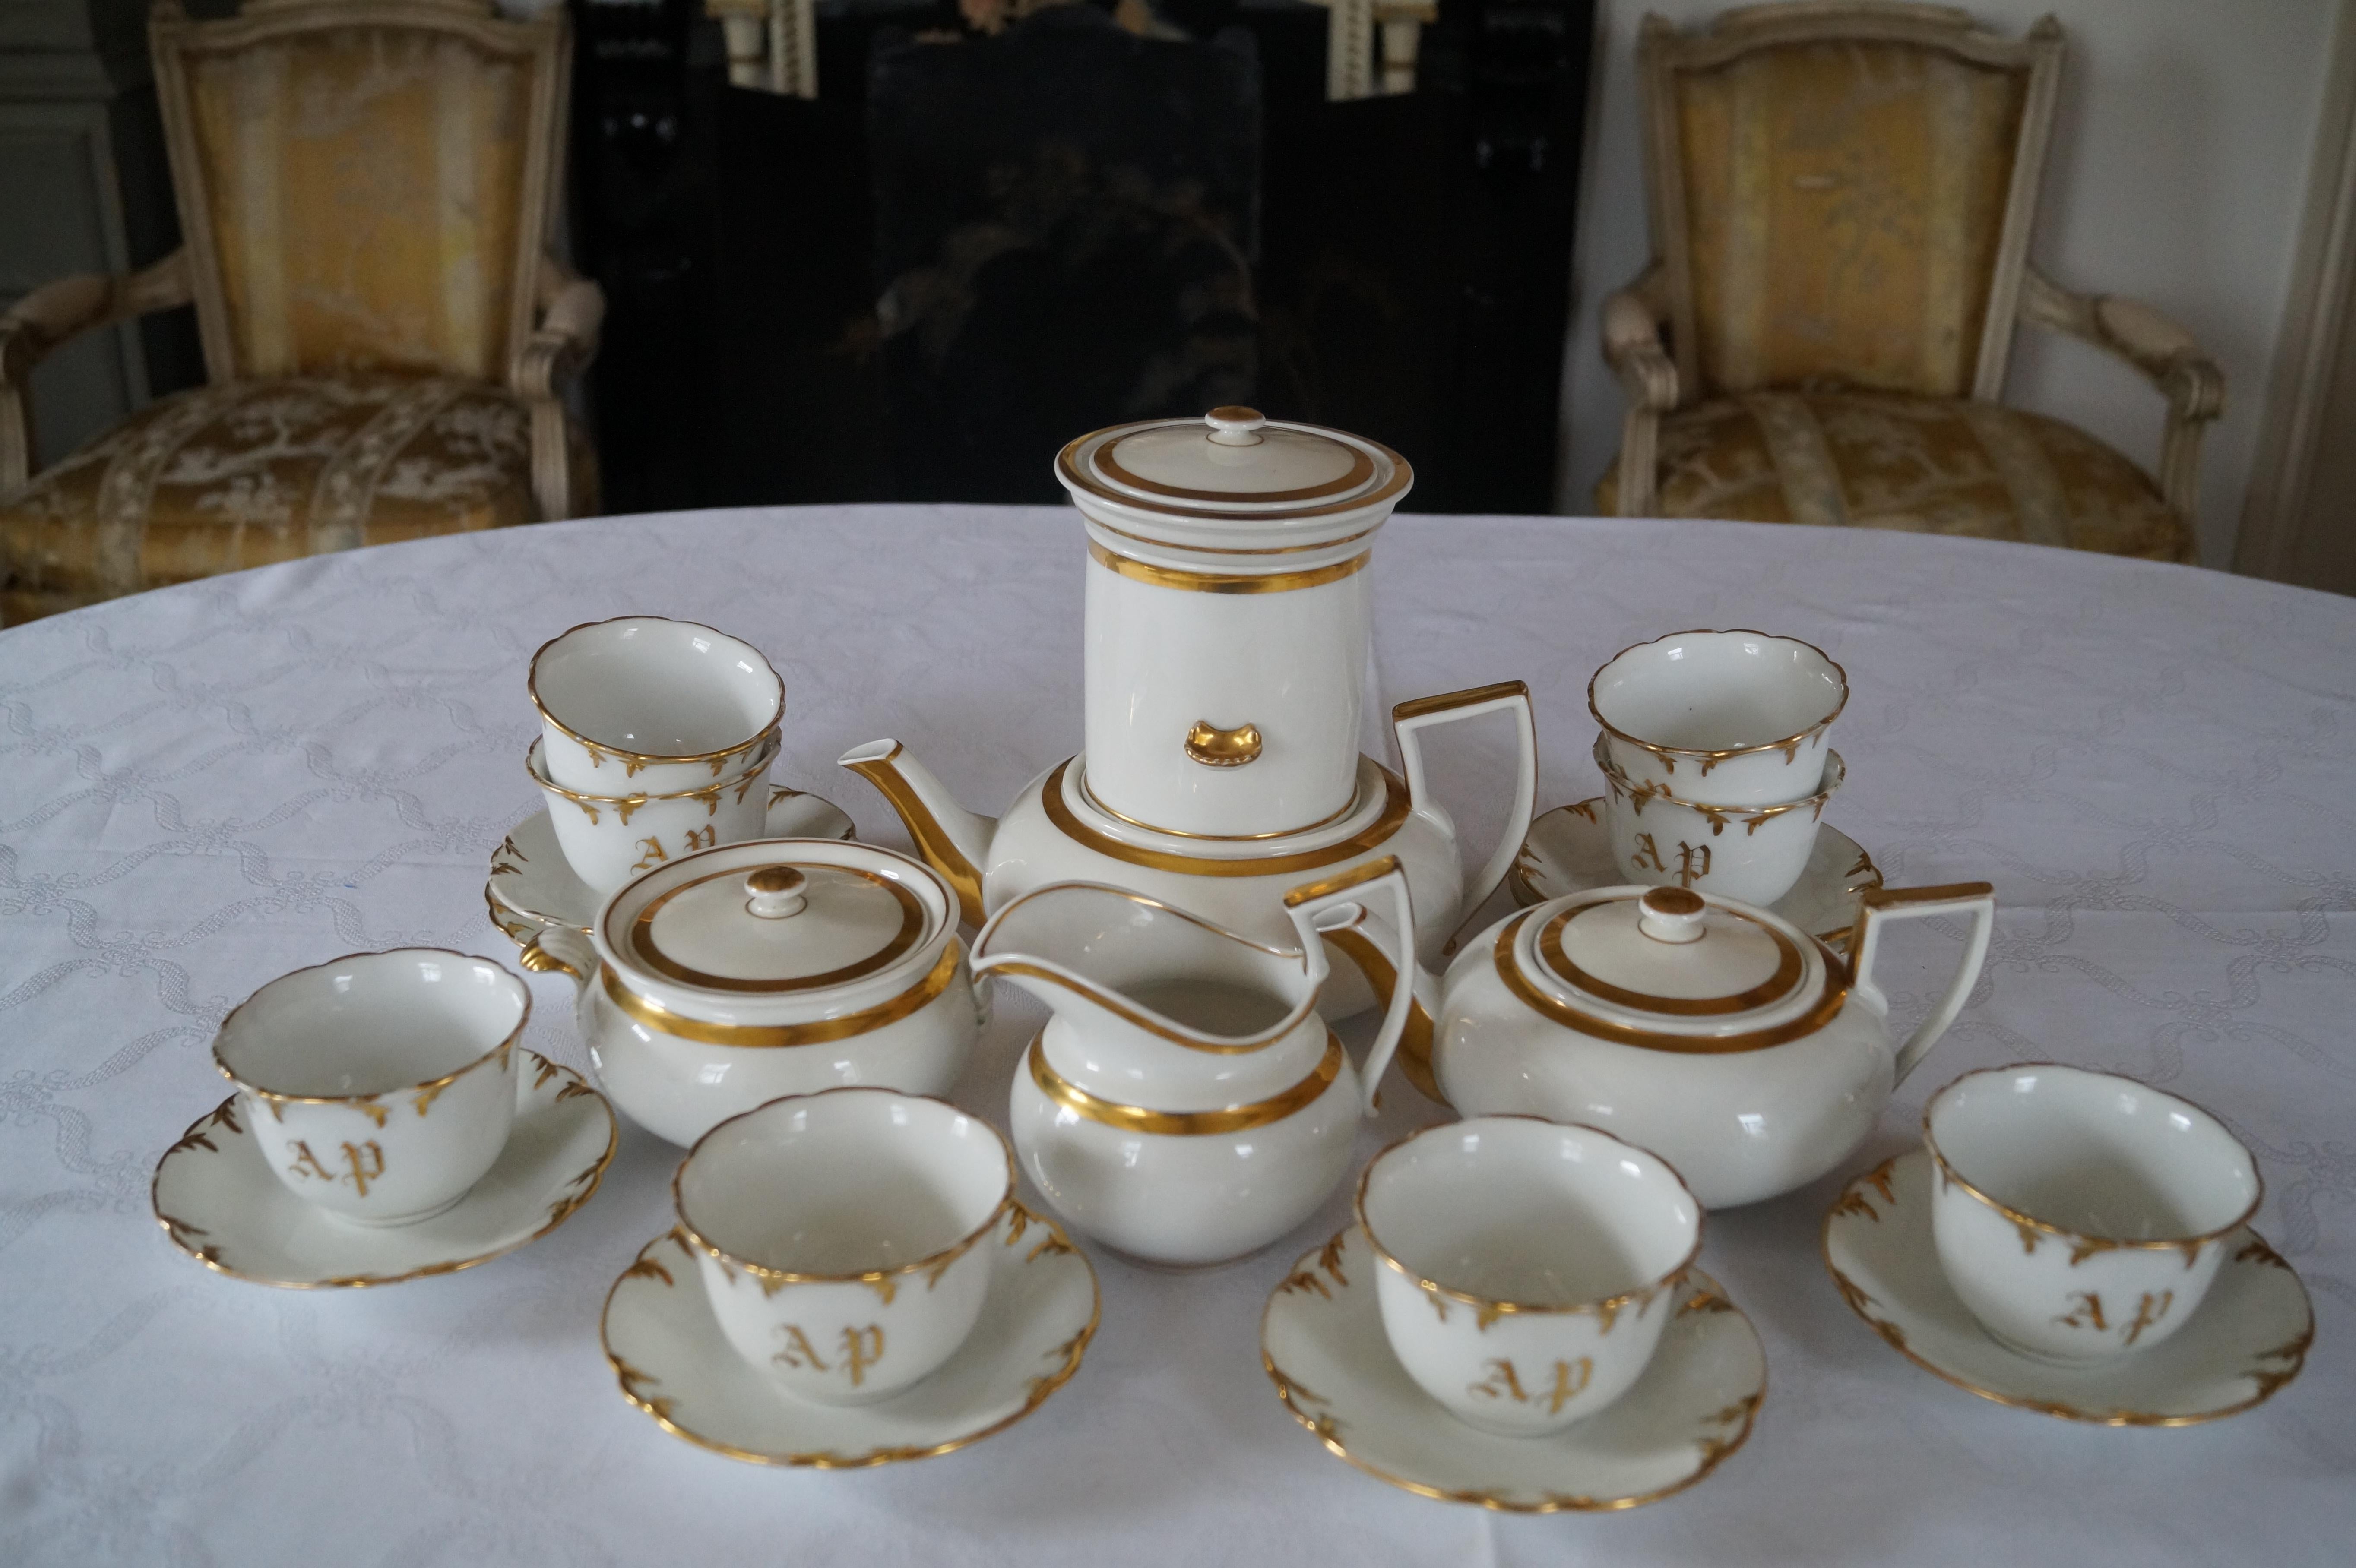 Schöne, seltene Form Modell, Old Paris Porzellan Kaffee-Tee-Set mit Kaffee-Filter-Aufsatz und Tasse und Untertassen mit Monogramm!

Der Kaffeefilter passt nur in die große Kaffee- (Tee-) Kanne. Normalerweise wird Tee nicht mit einem Kaffeefilter